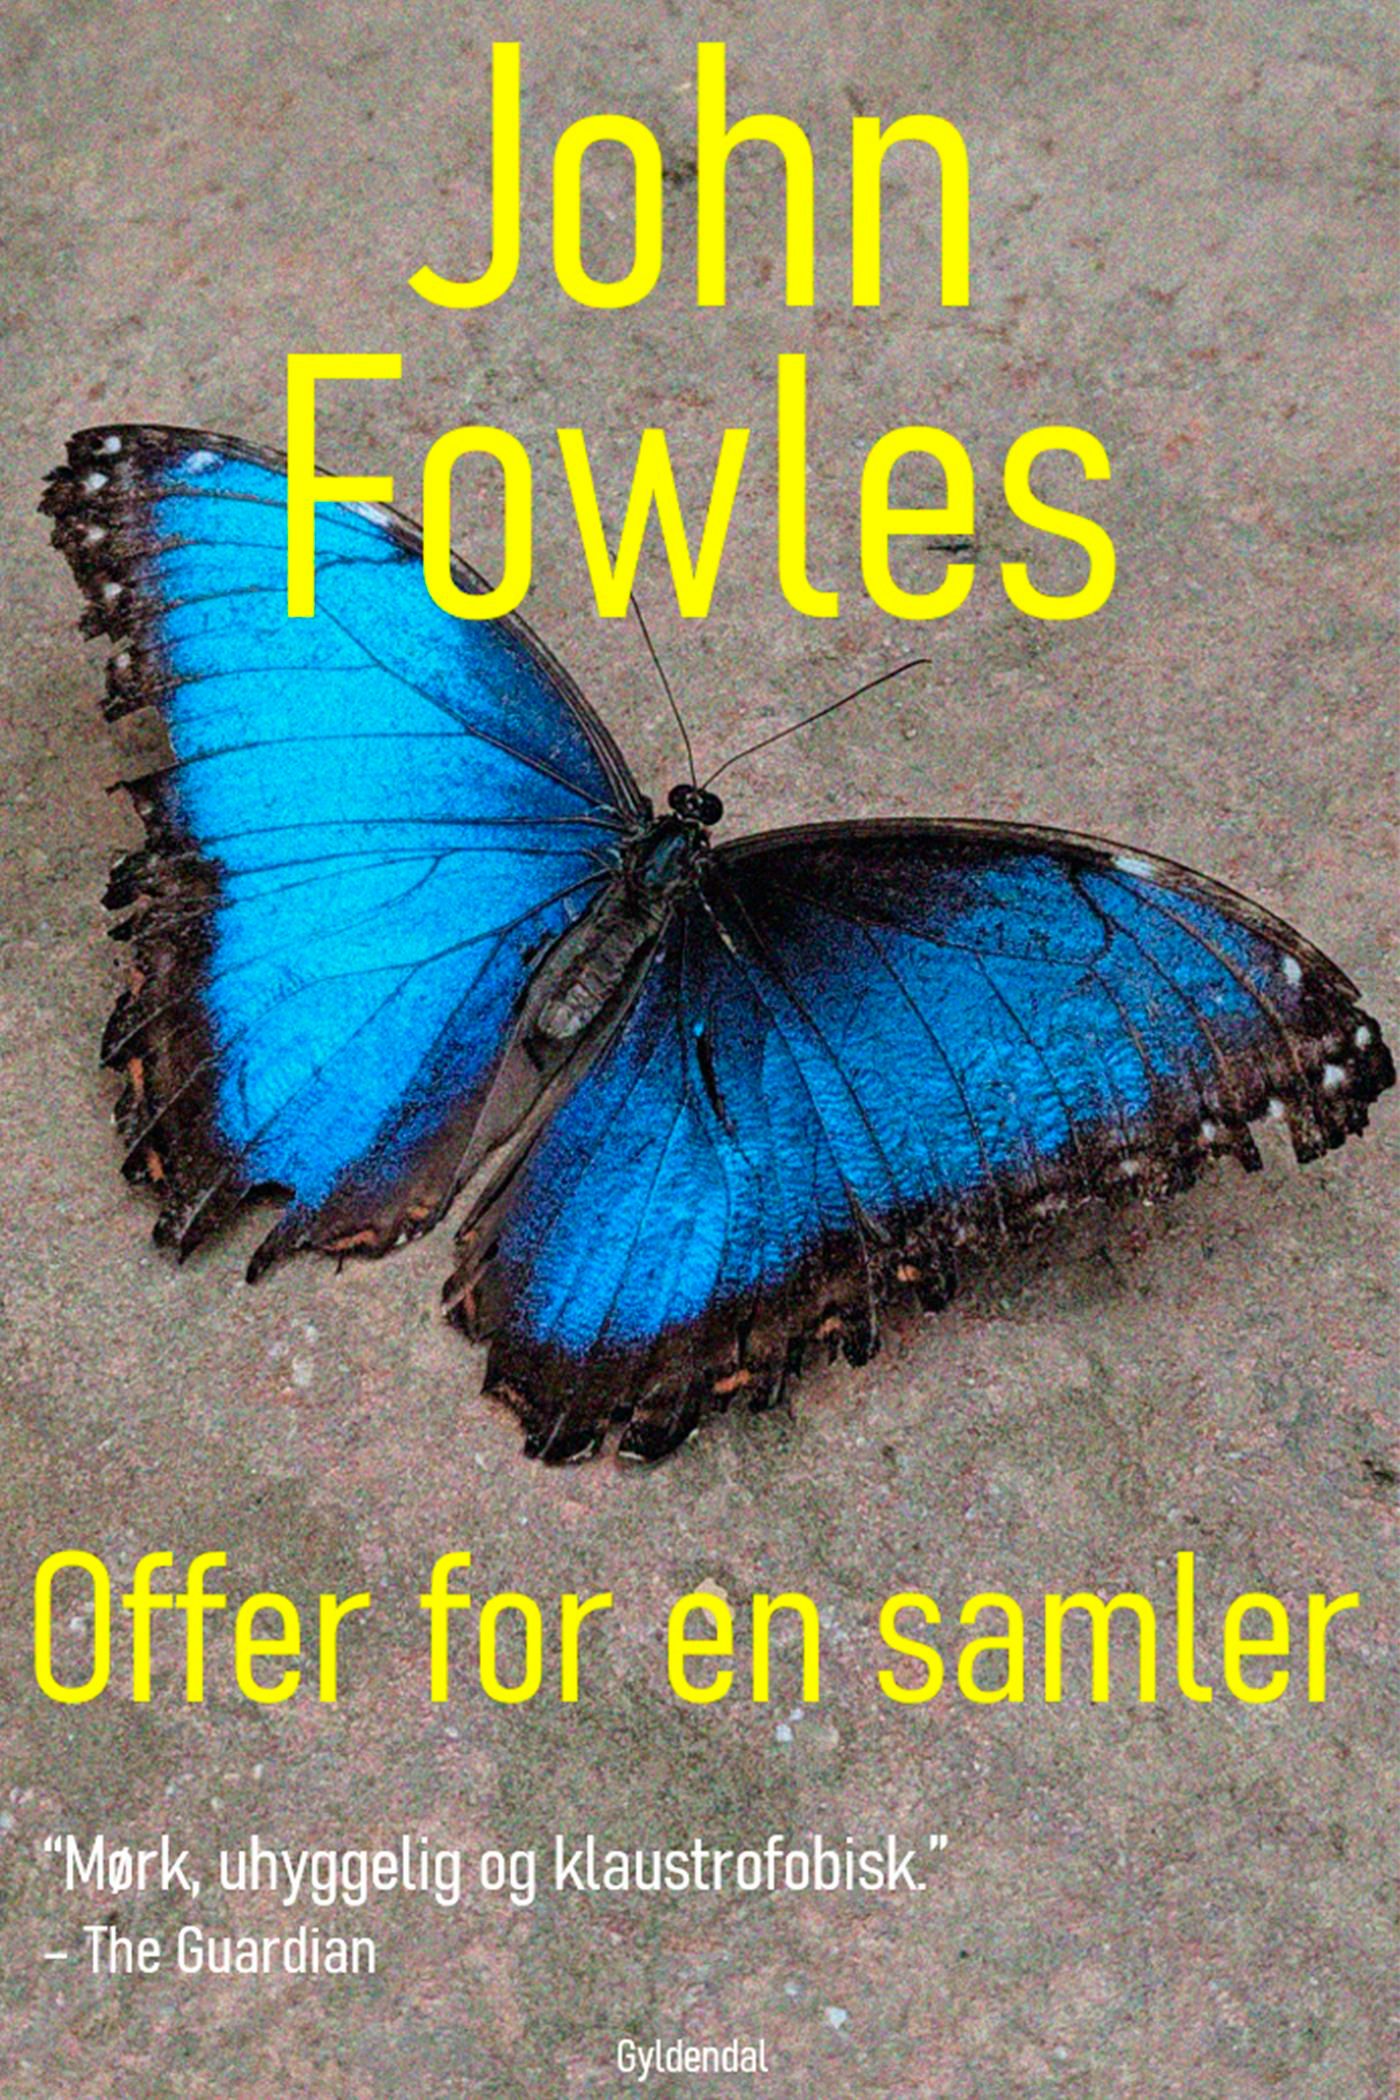 Offer for en samler, e-bog af John Fowles